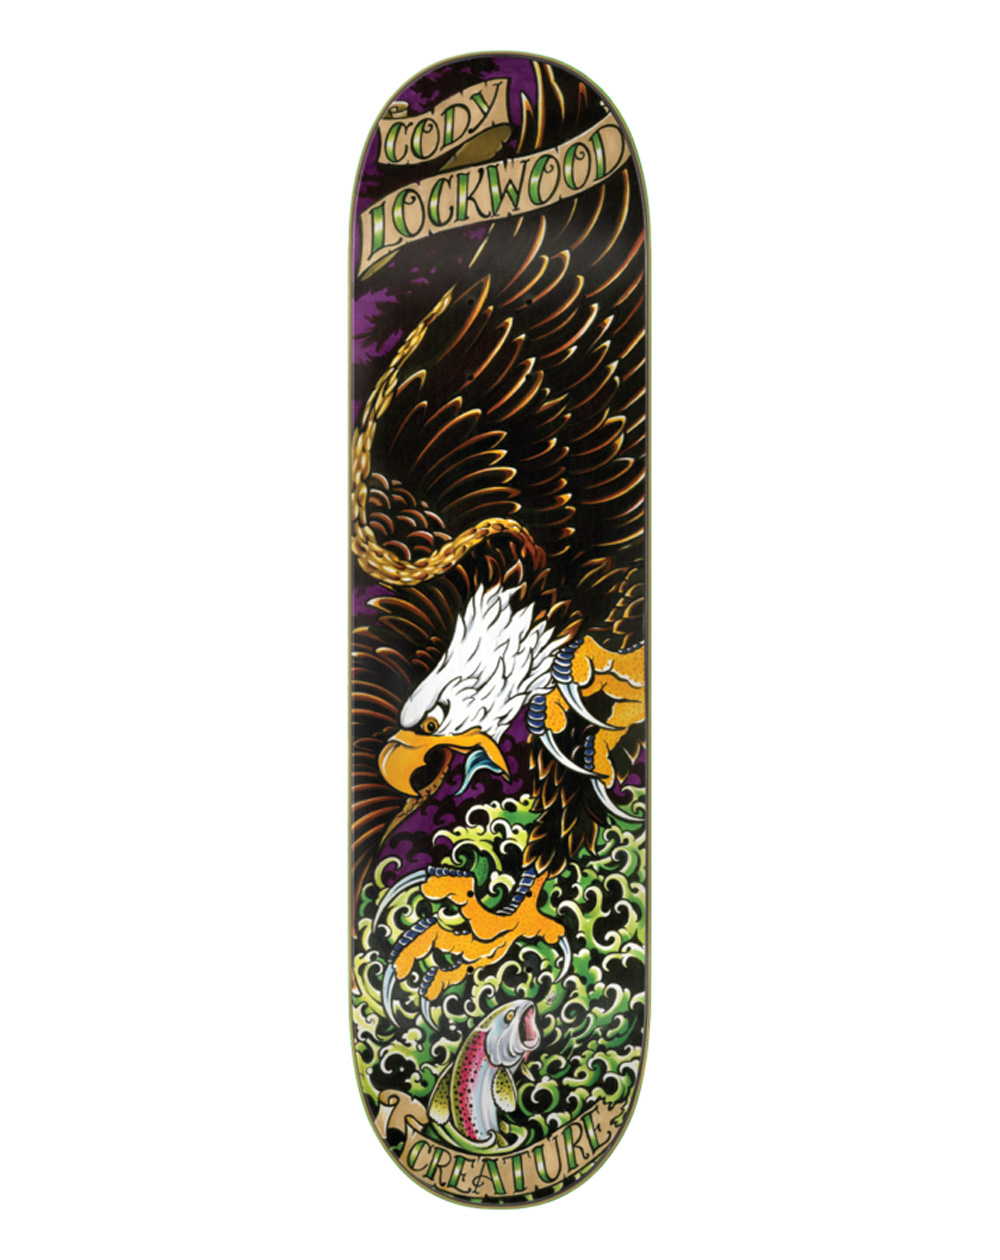 Creature Tavola Skateboard Lockwood Beast of Prey 8.25"